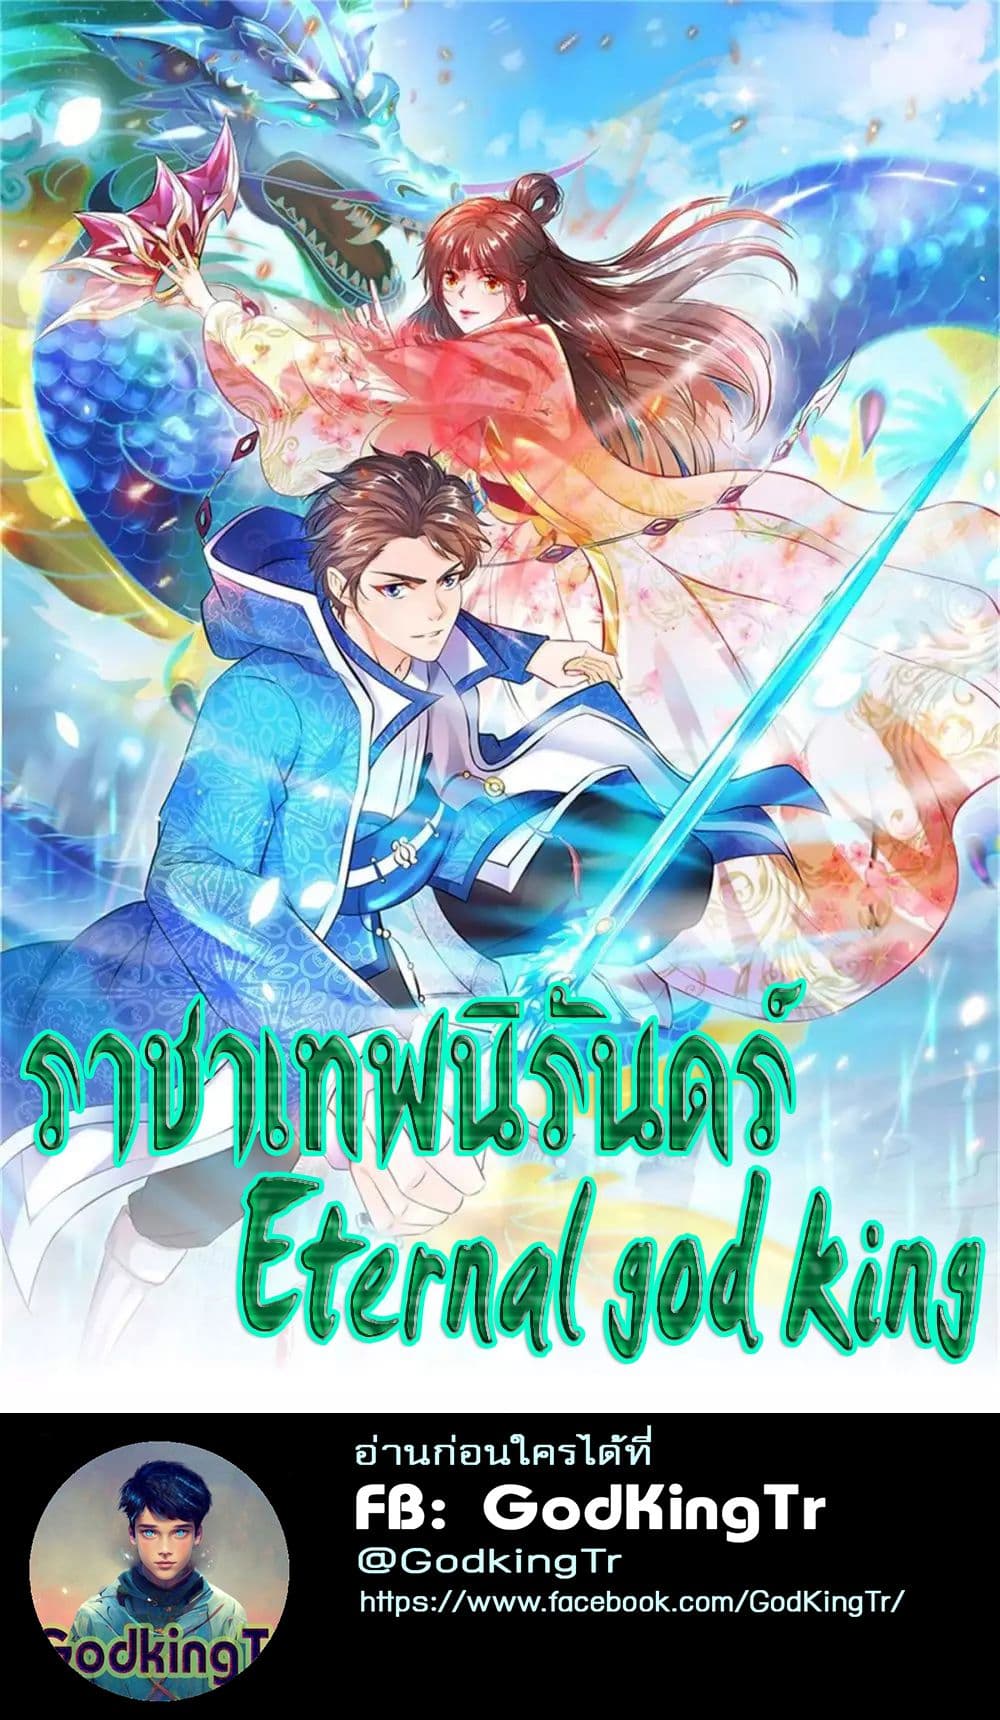 Eternal god King 33 (1)